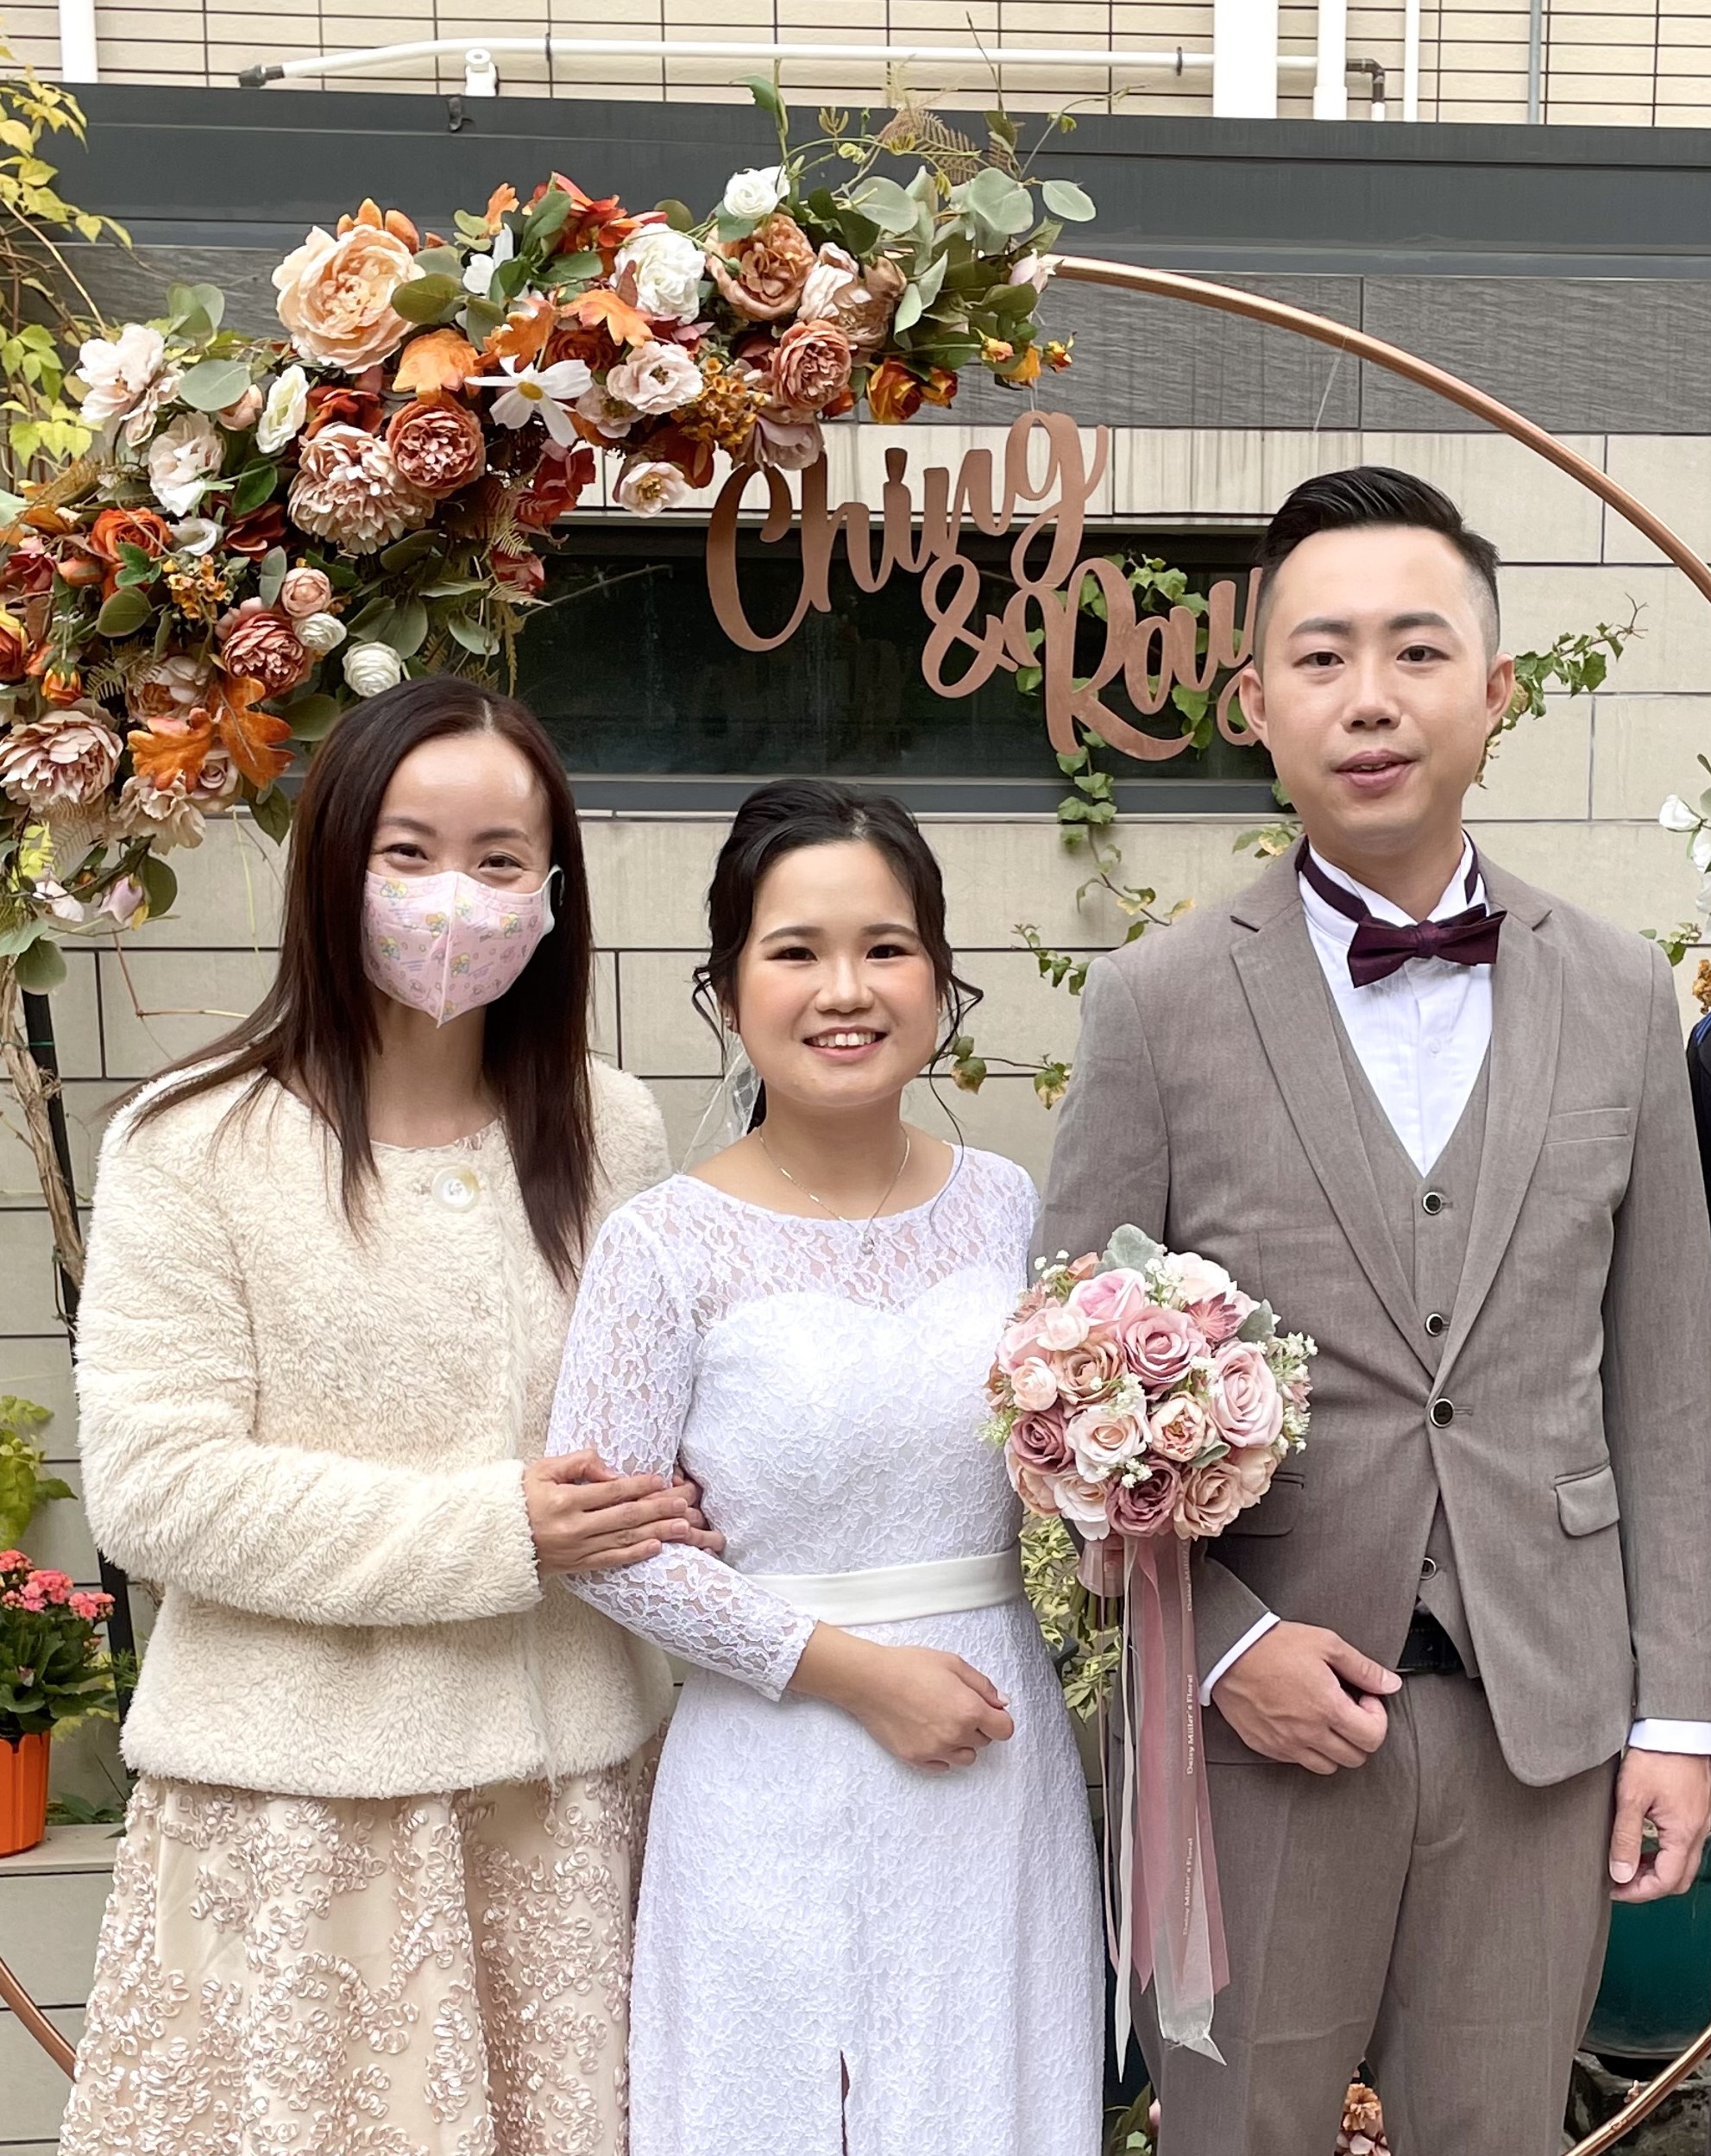 MC Angel Leung之司儀主持紀錄: 半日婚禮統籌及婚禮司儀 Wedding Planner & Wedding MC @元朗